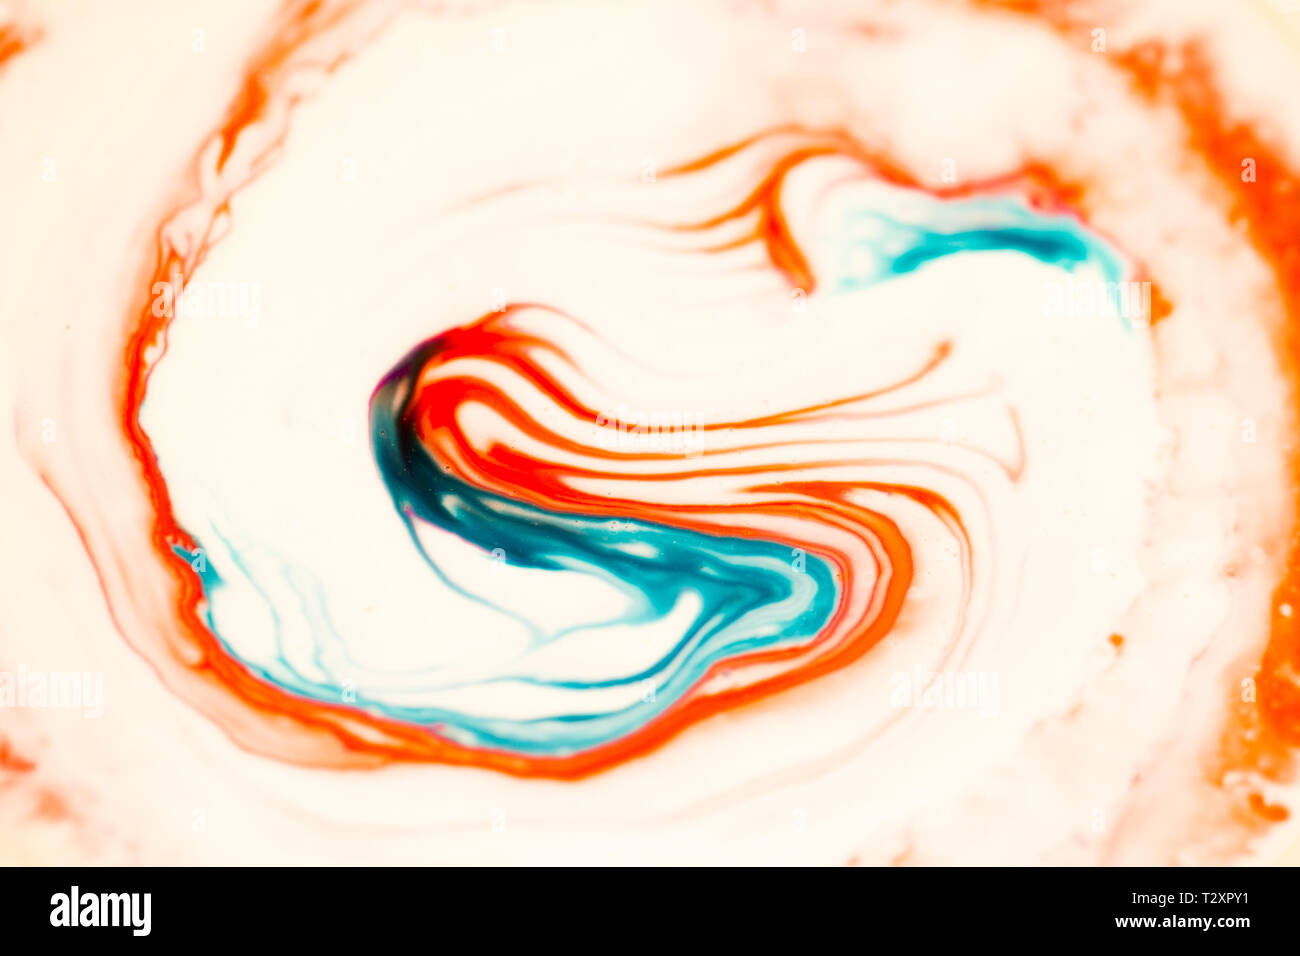 Colorant alimentaire rouge et bleu mélangé avec de la crème Photo Stock -  Alamy